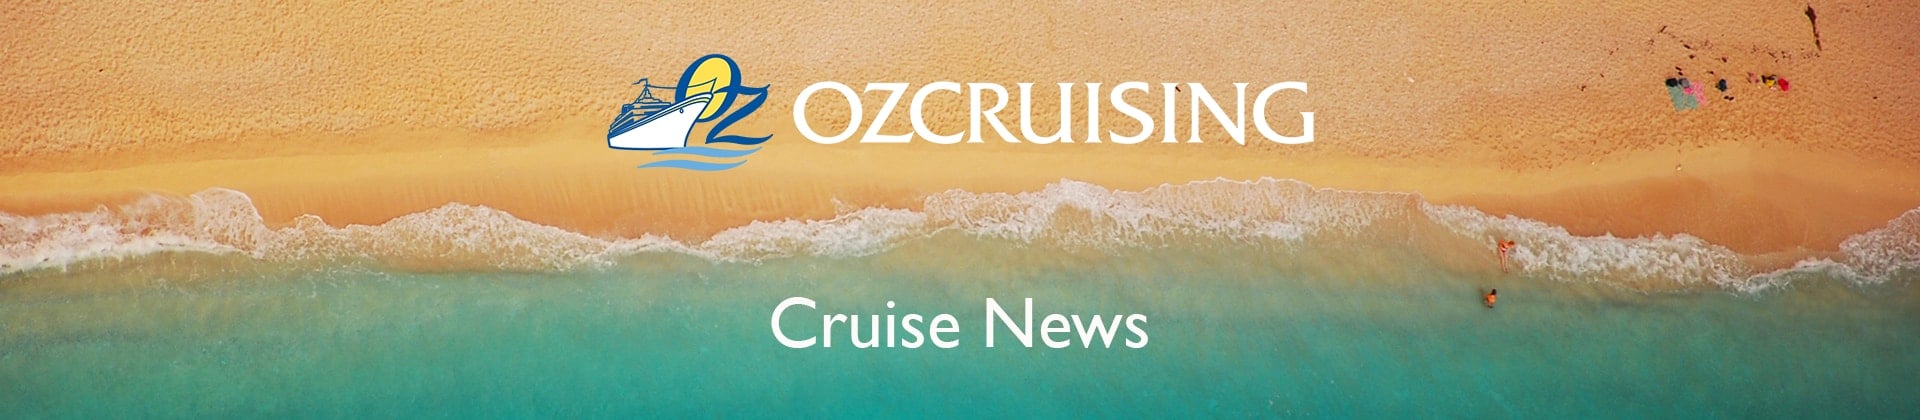 ocean liner vs cruise ships